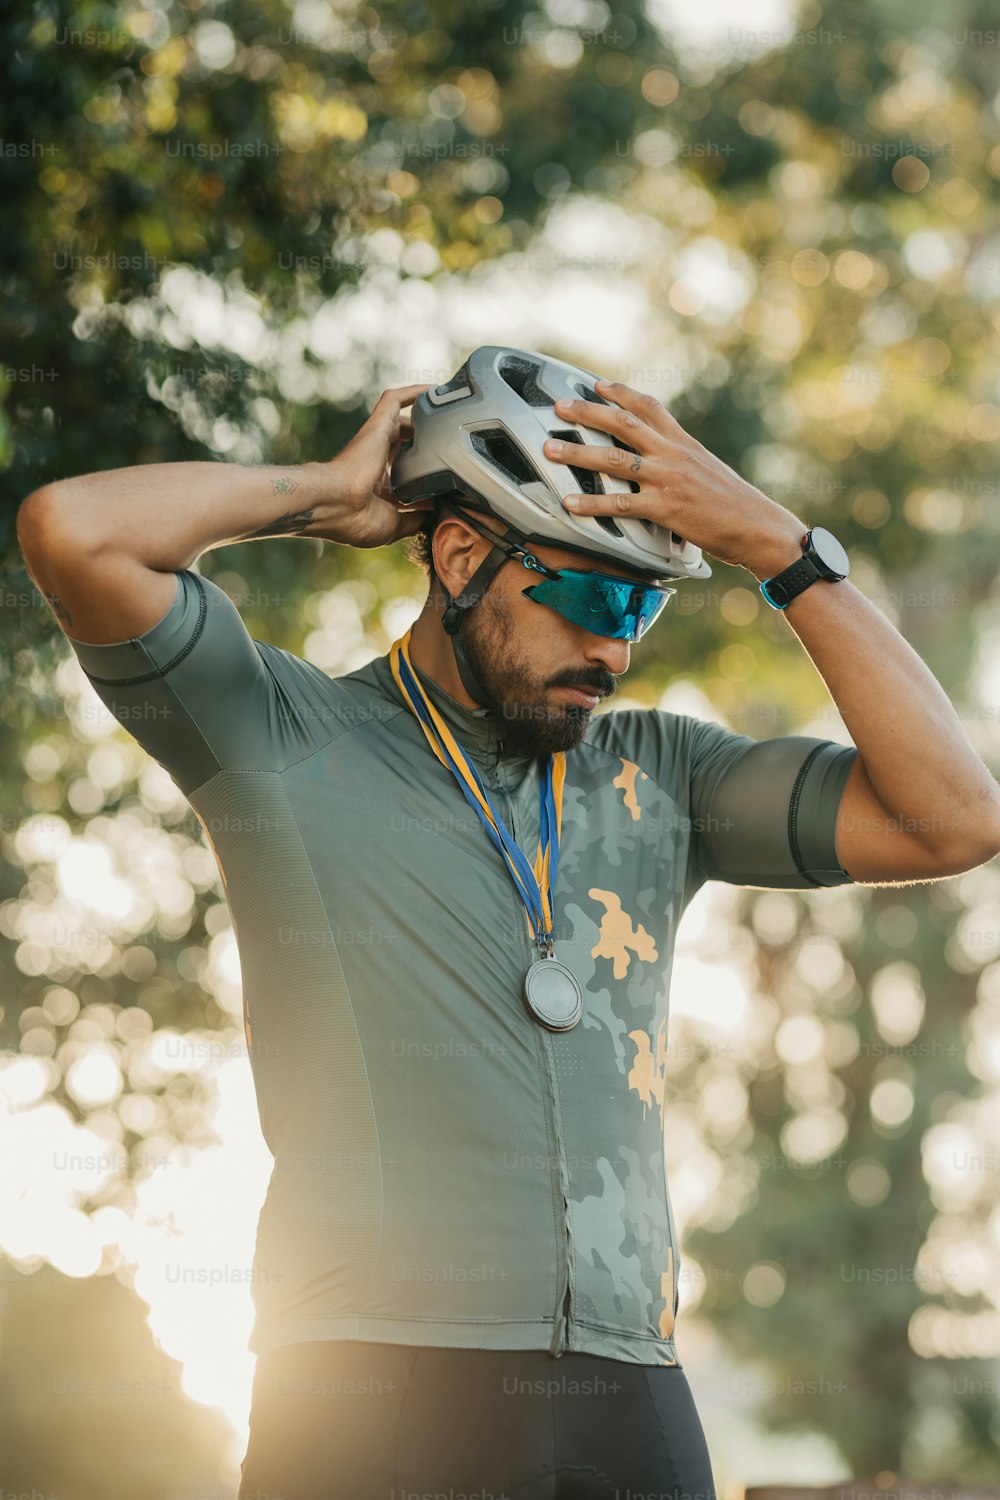 Un hombre con casco de bicicleta y gafas de sol